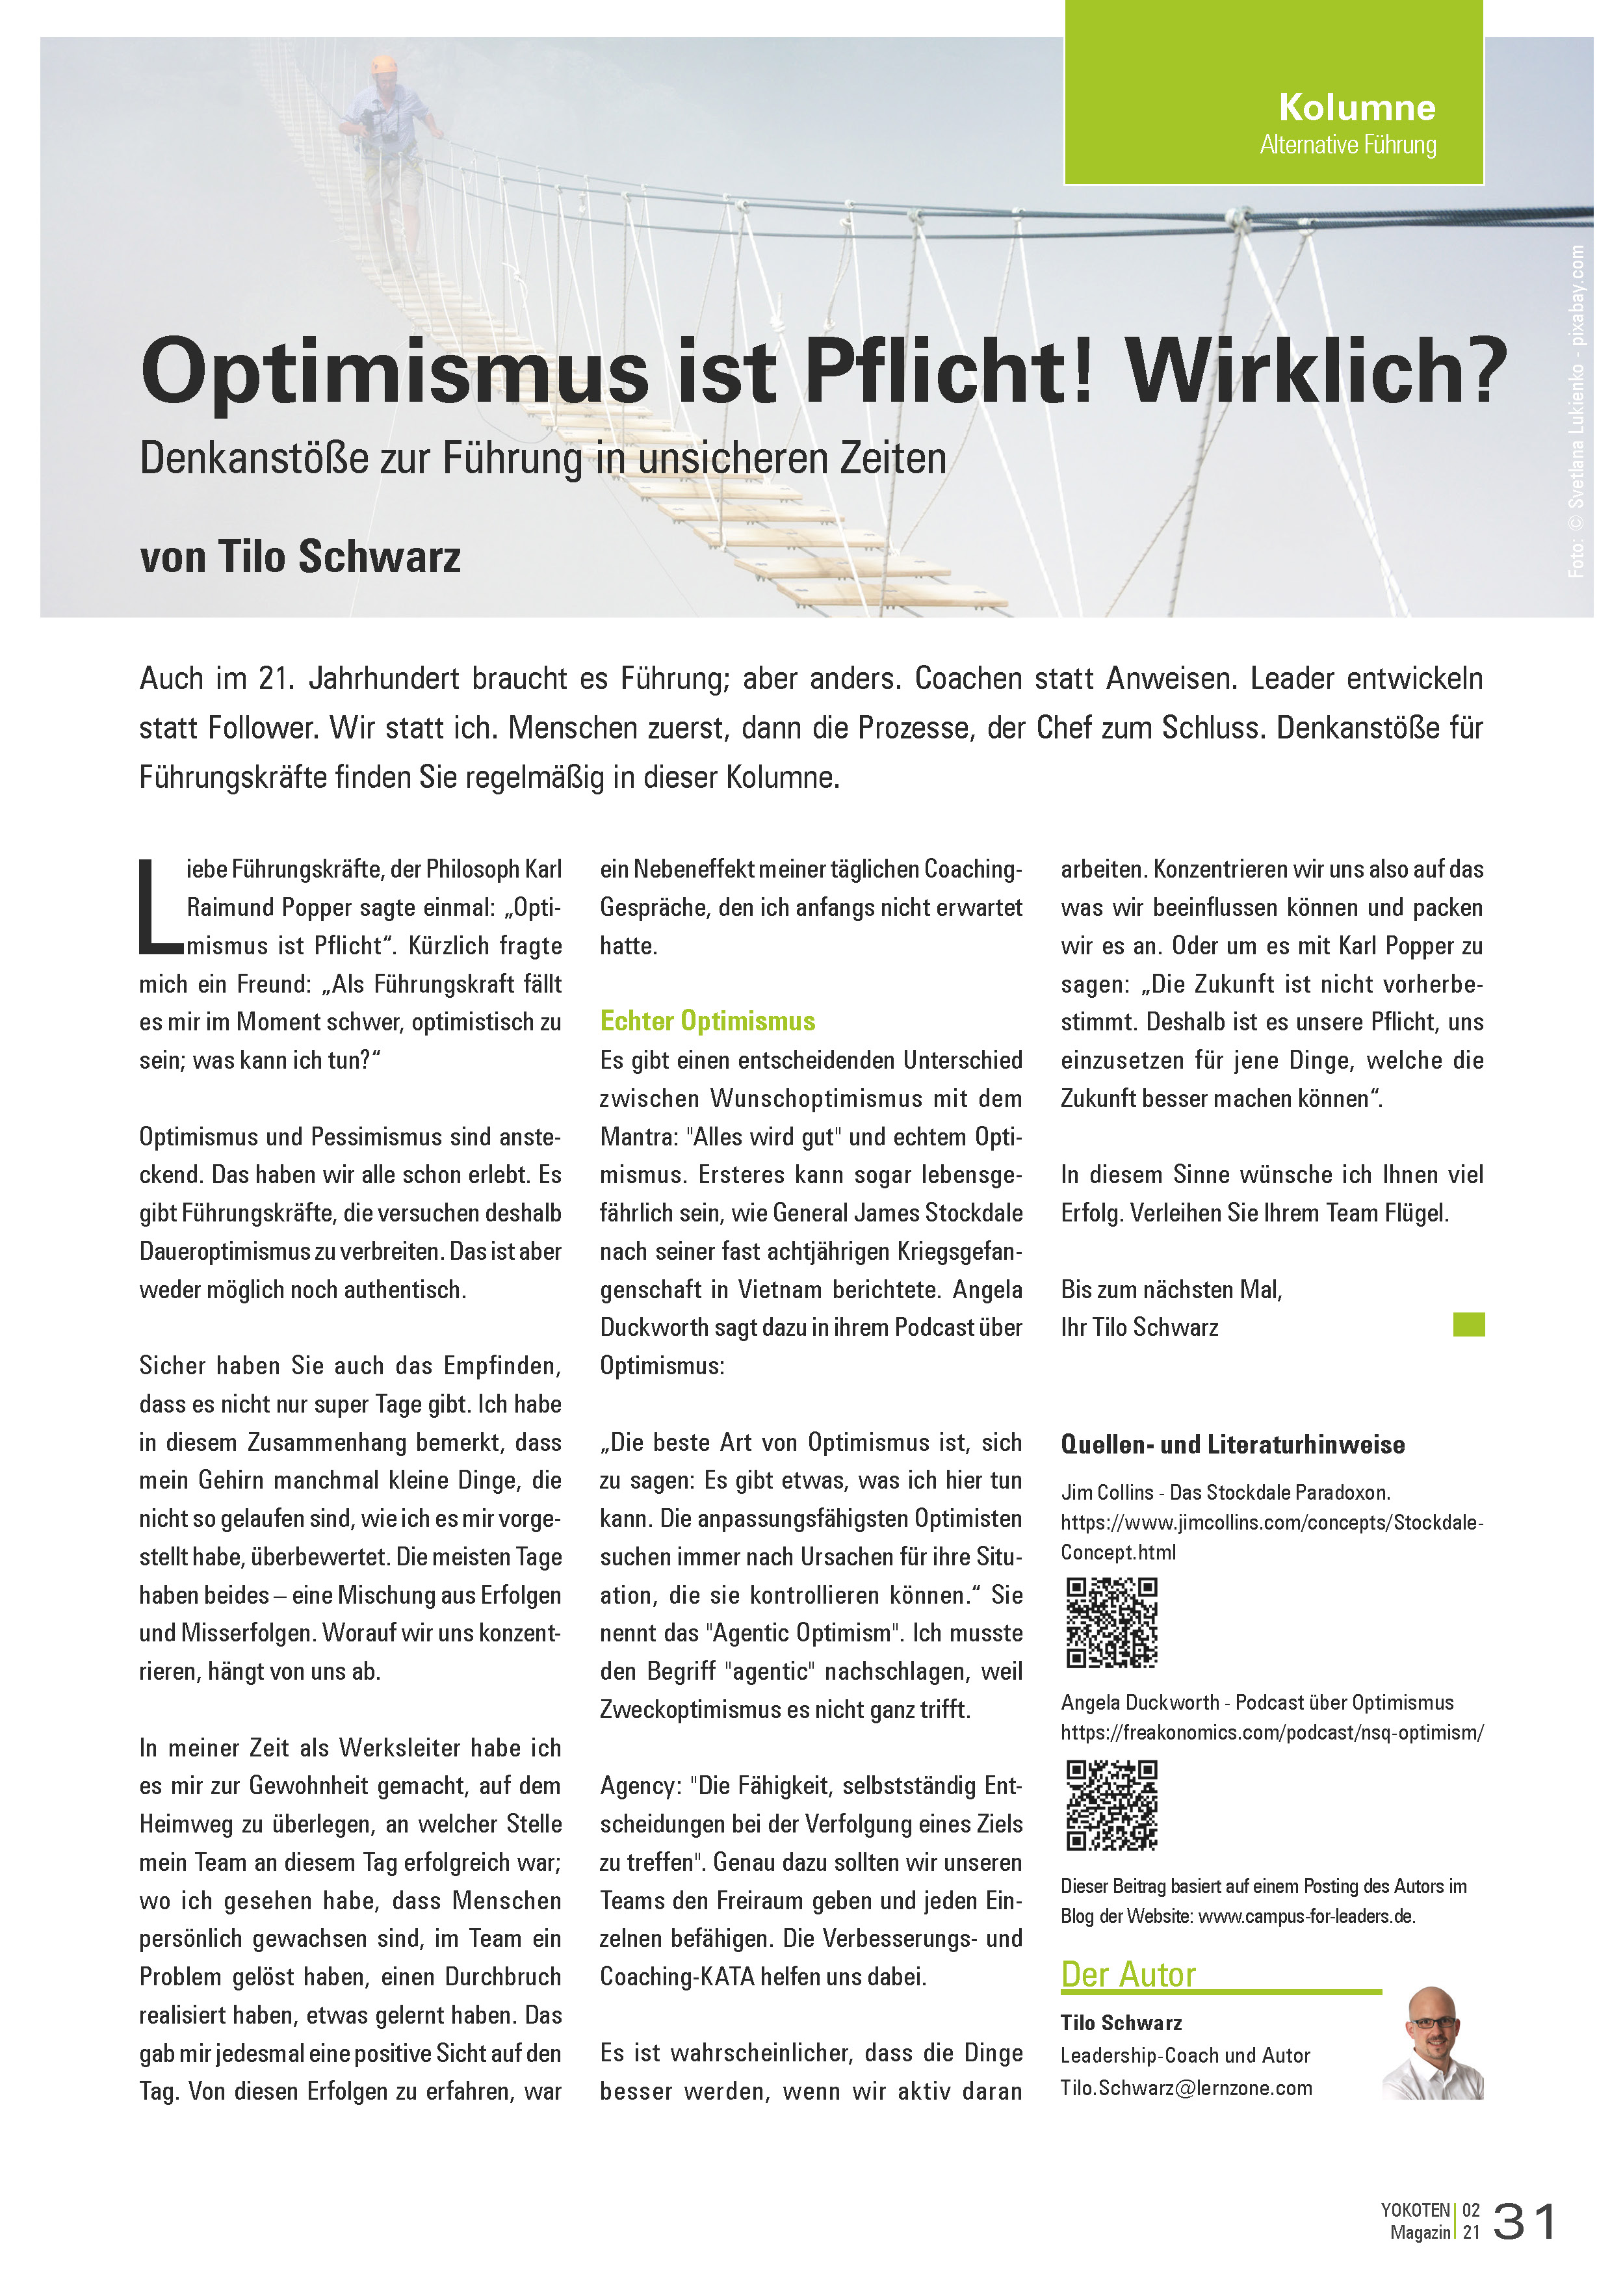 Optimismus ist Pflicht! Wirklich? - Artikel aus Fachmagazin YOKOTEN 2021-02